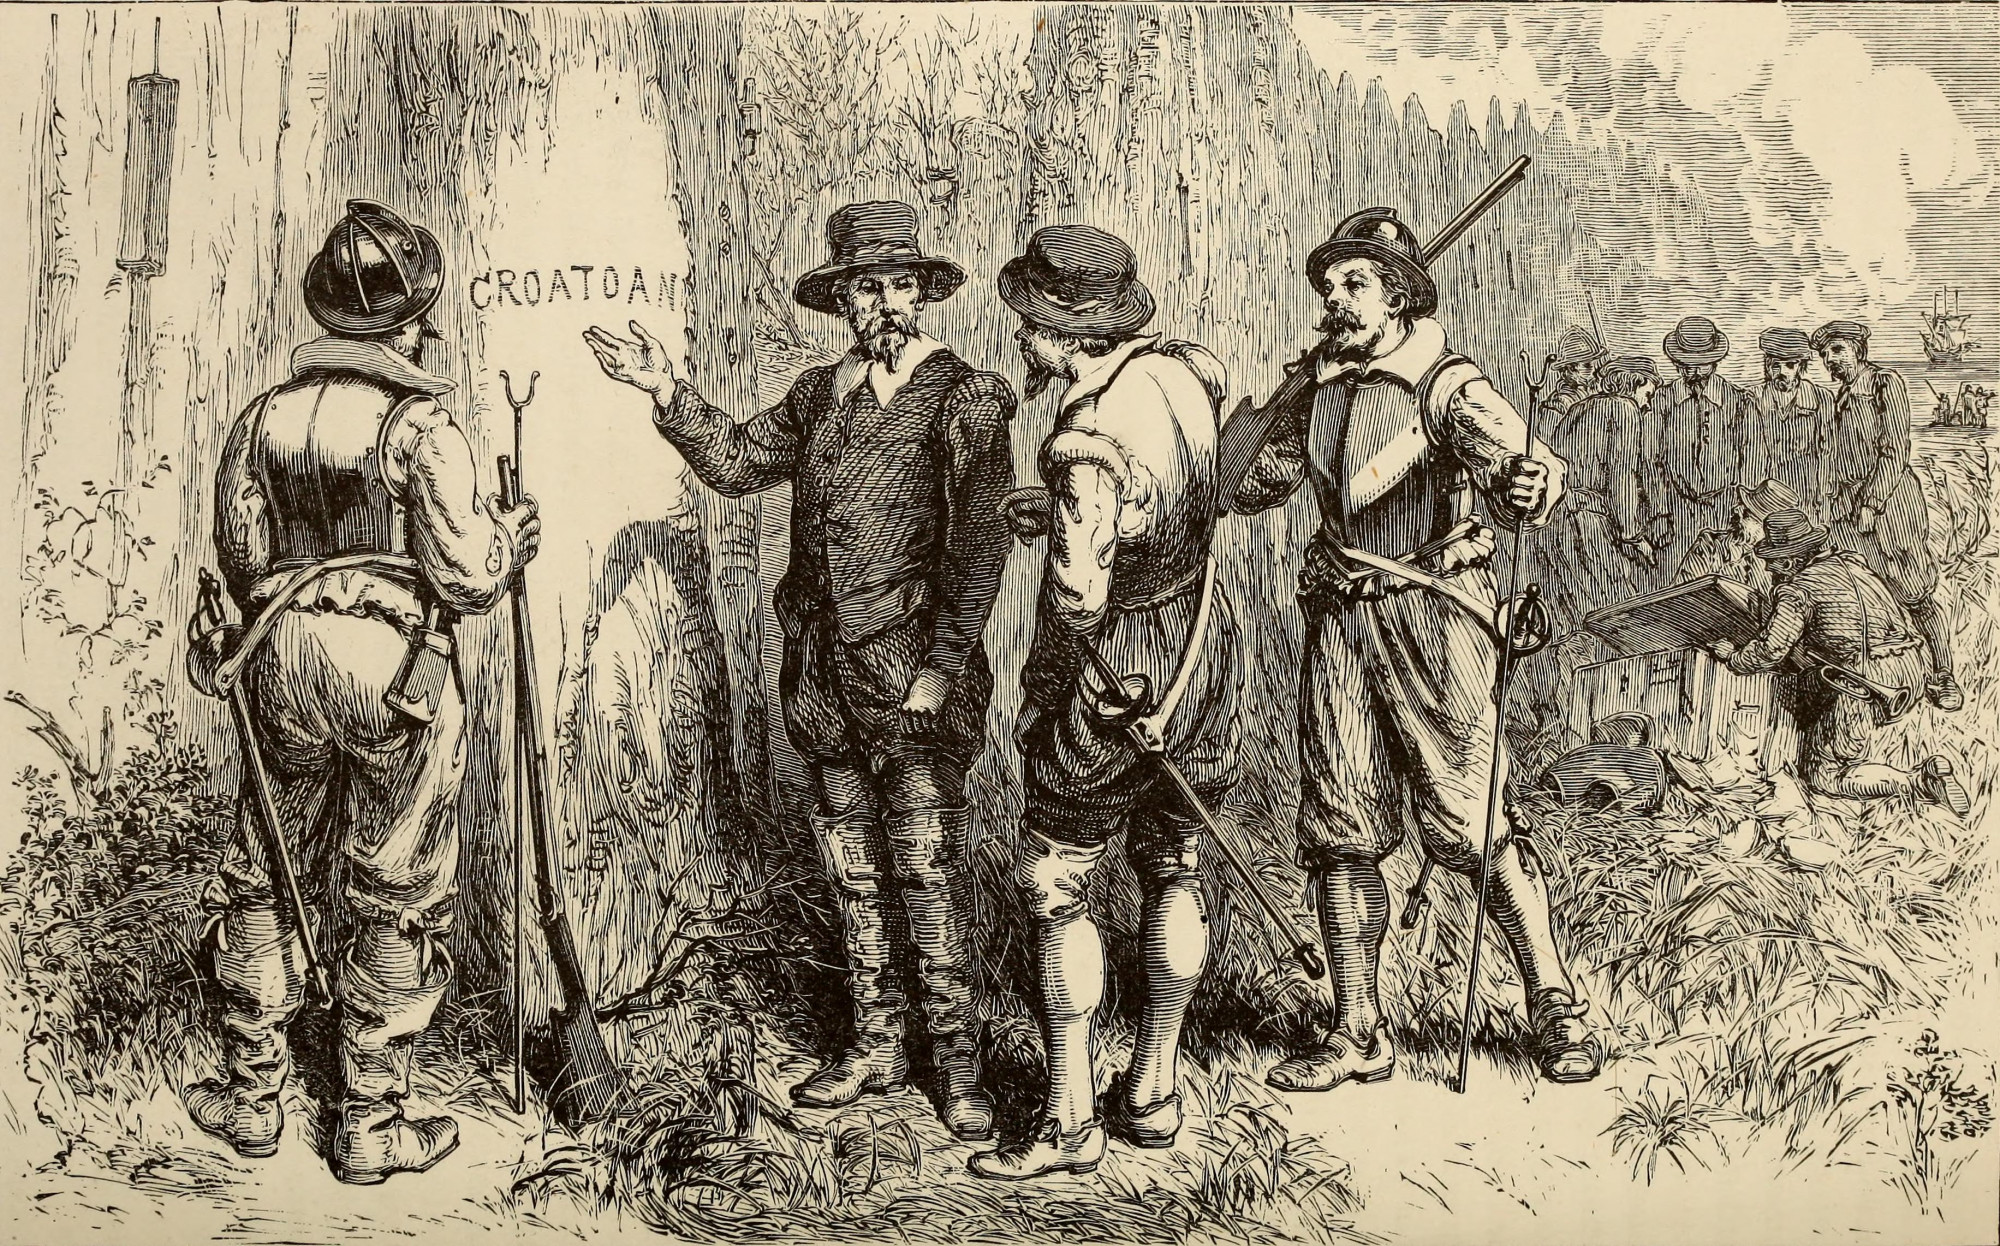 Megoldódni látszik Amerika gyarmatosításának négy évszázados talánya, a Roanoke-kolónia rejtélyes eltűnése